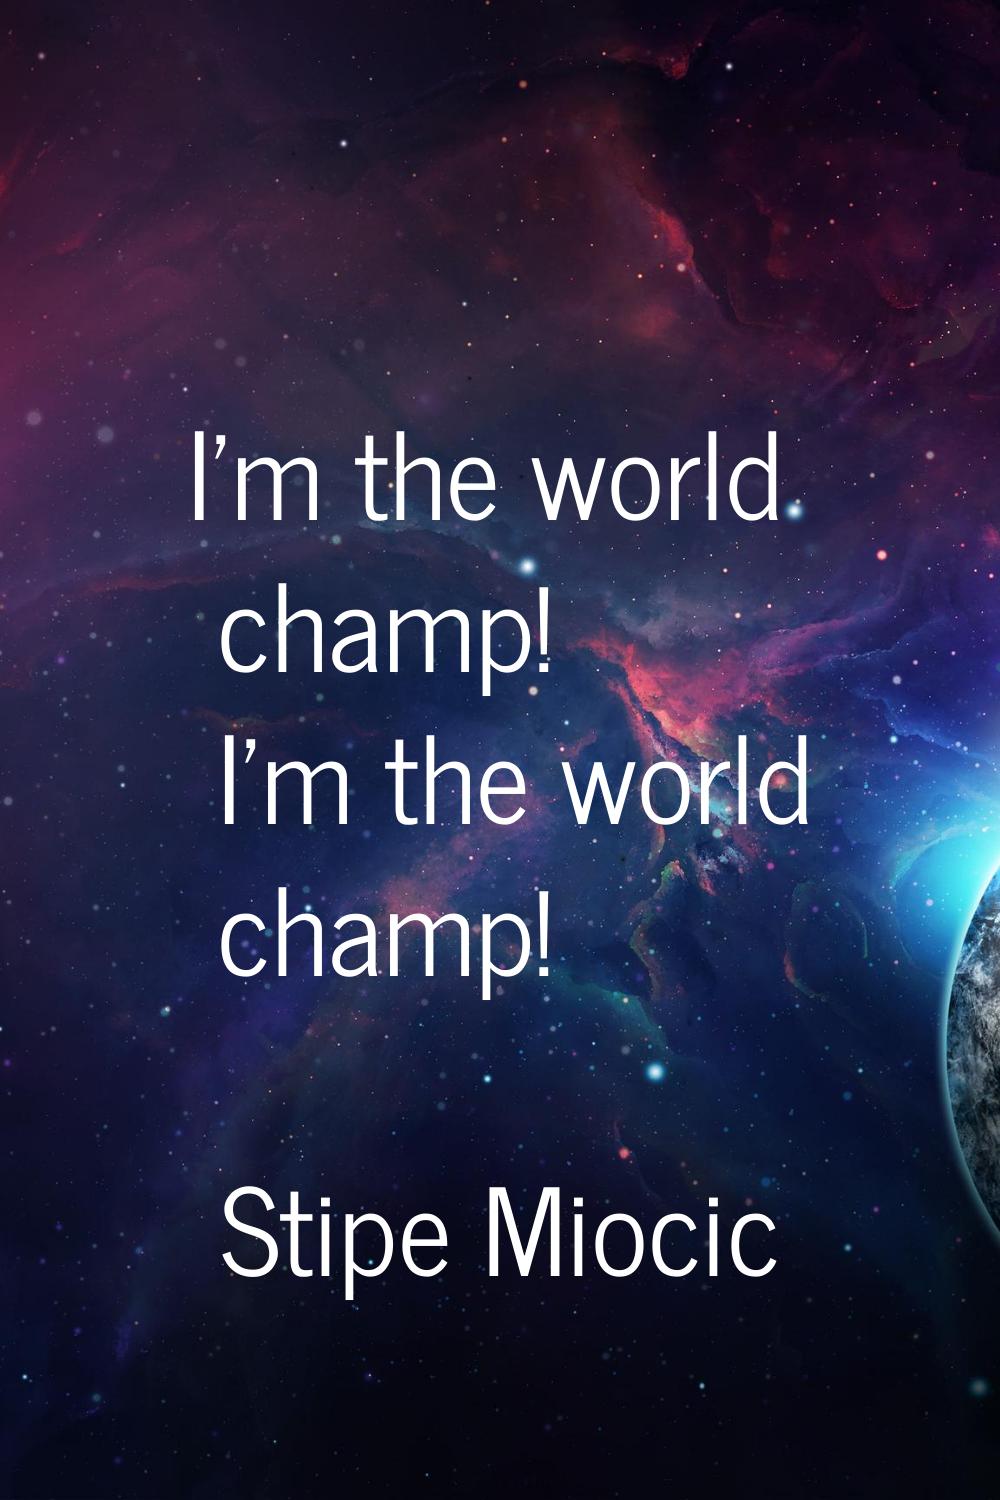 I'm the world champ! I'm the world champ!